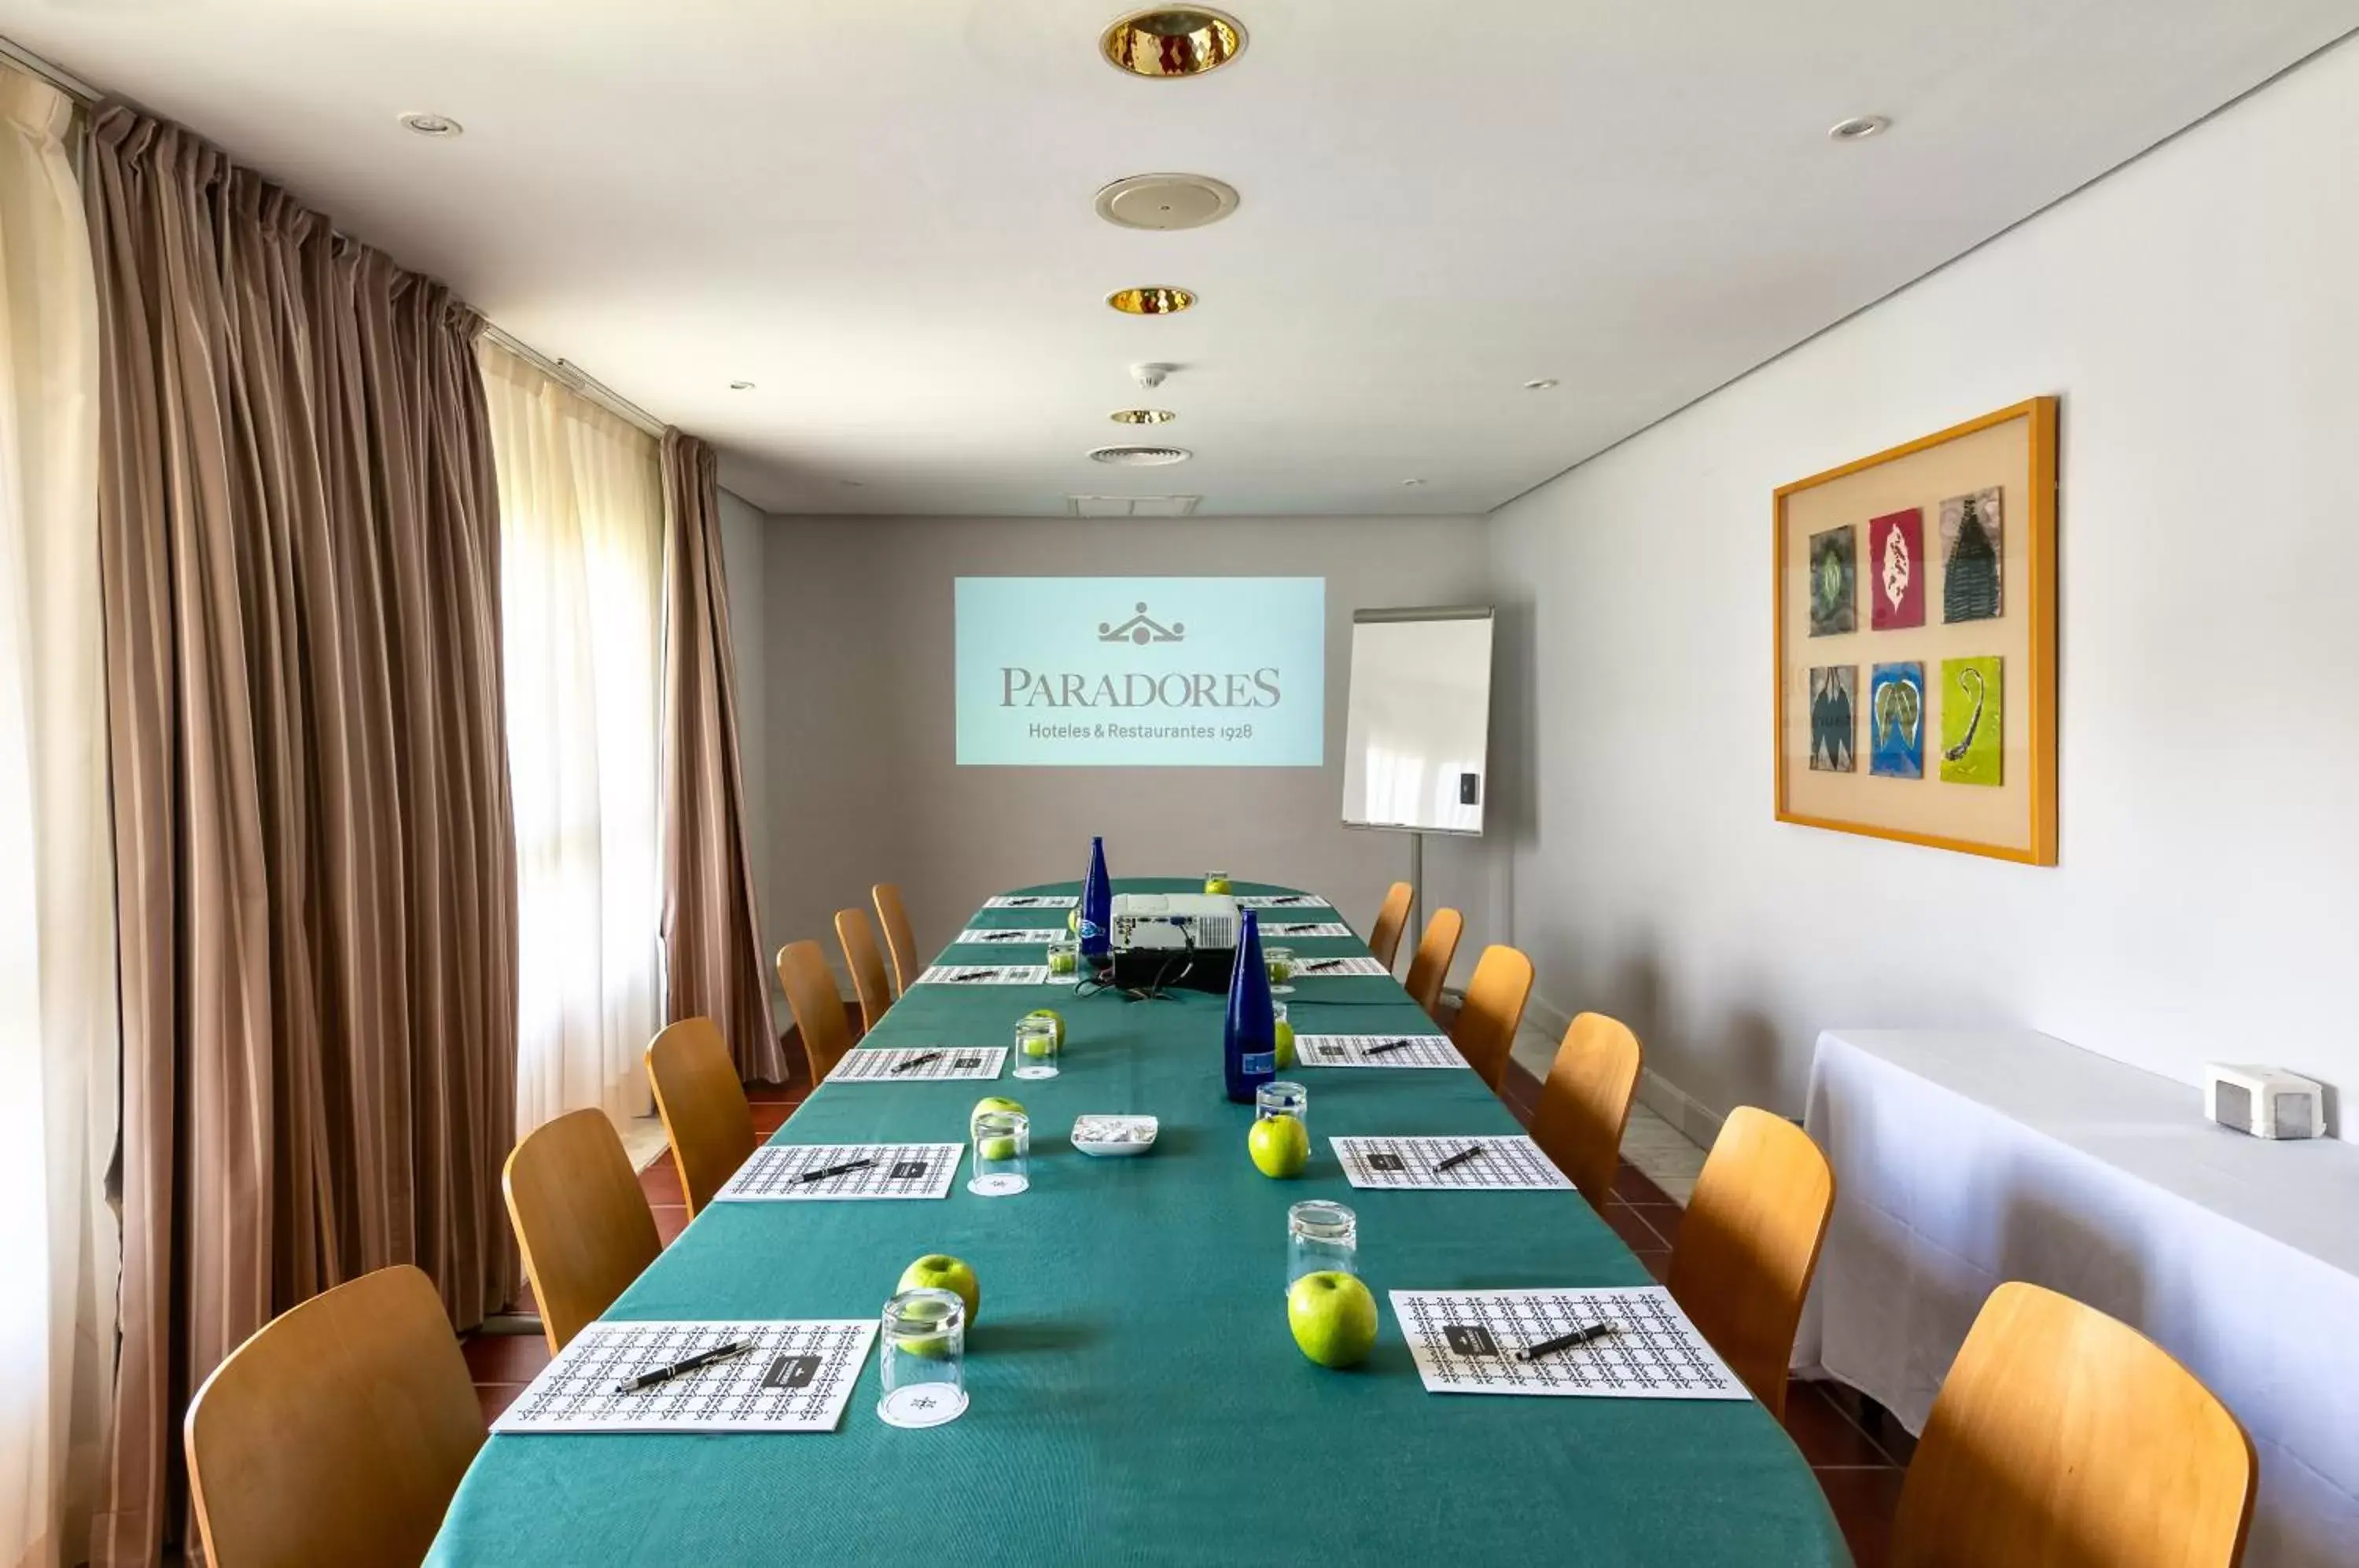 Meeting/conference room in Parador de Nerja